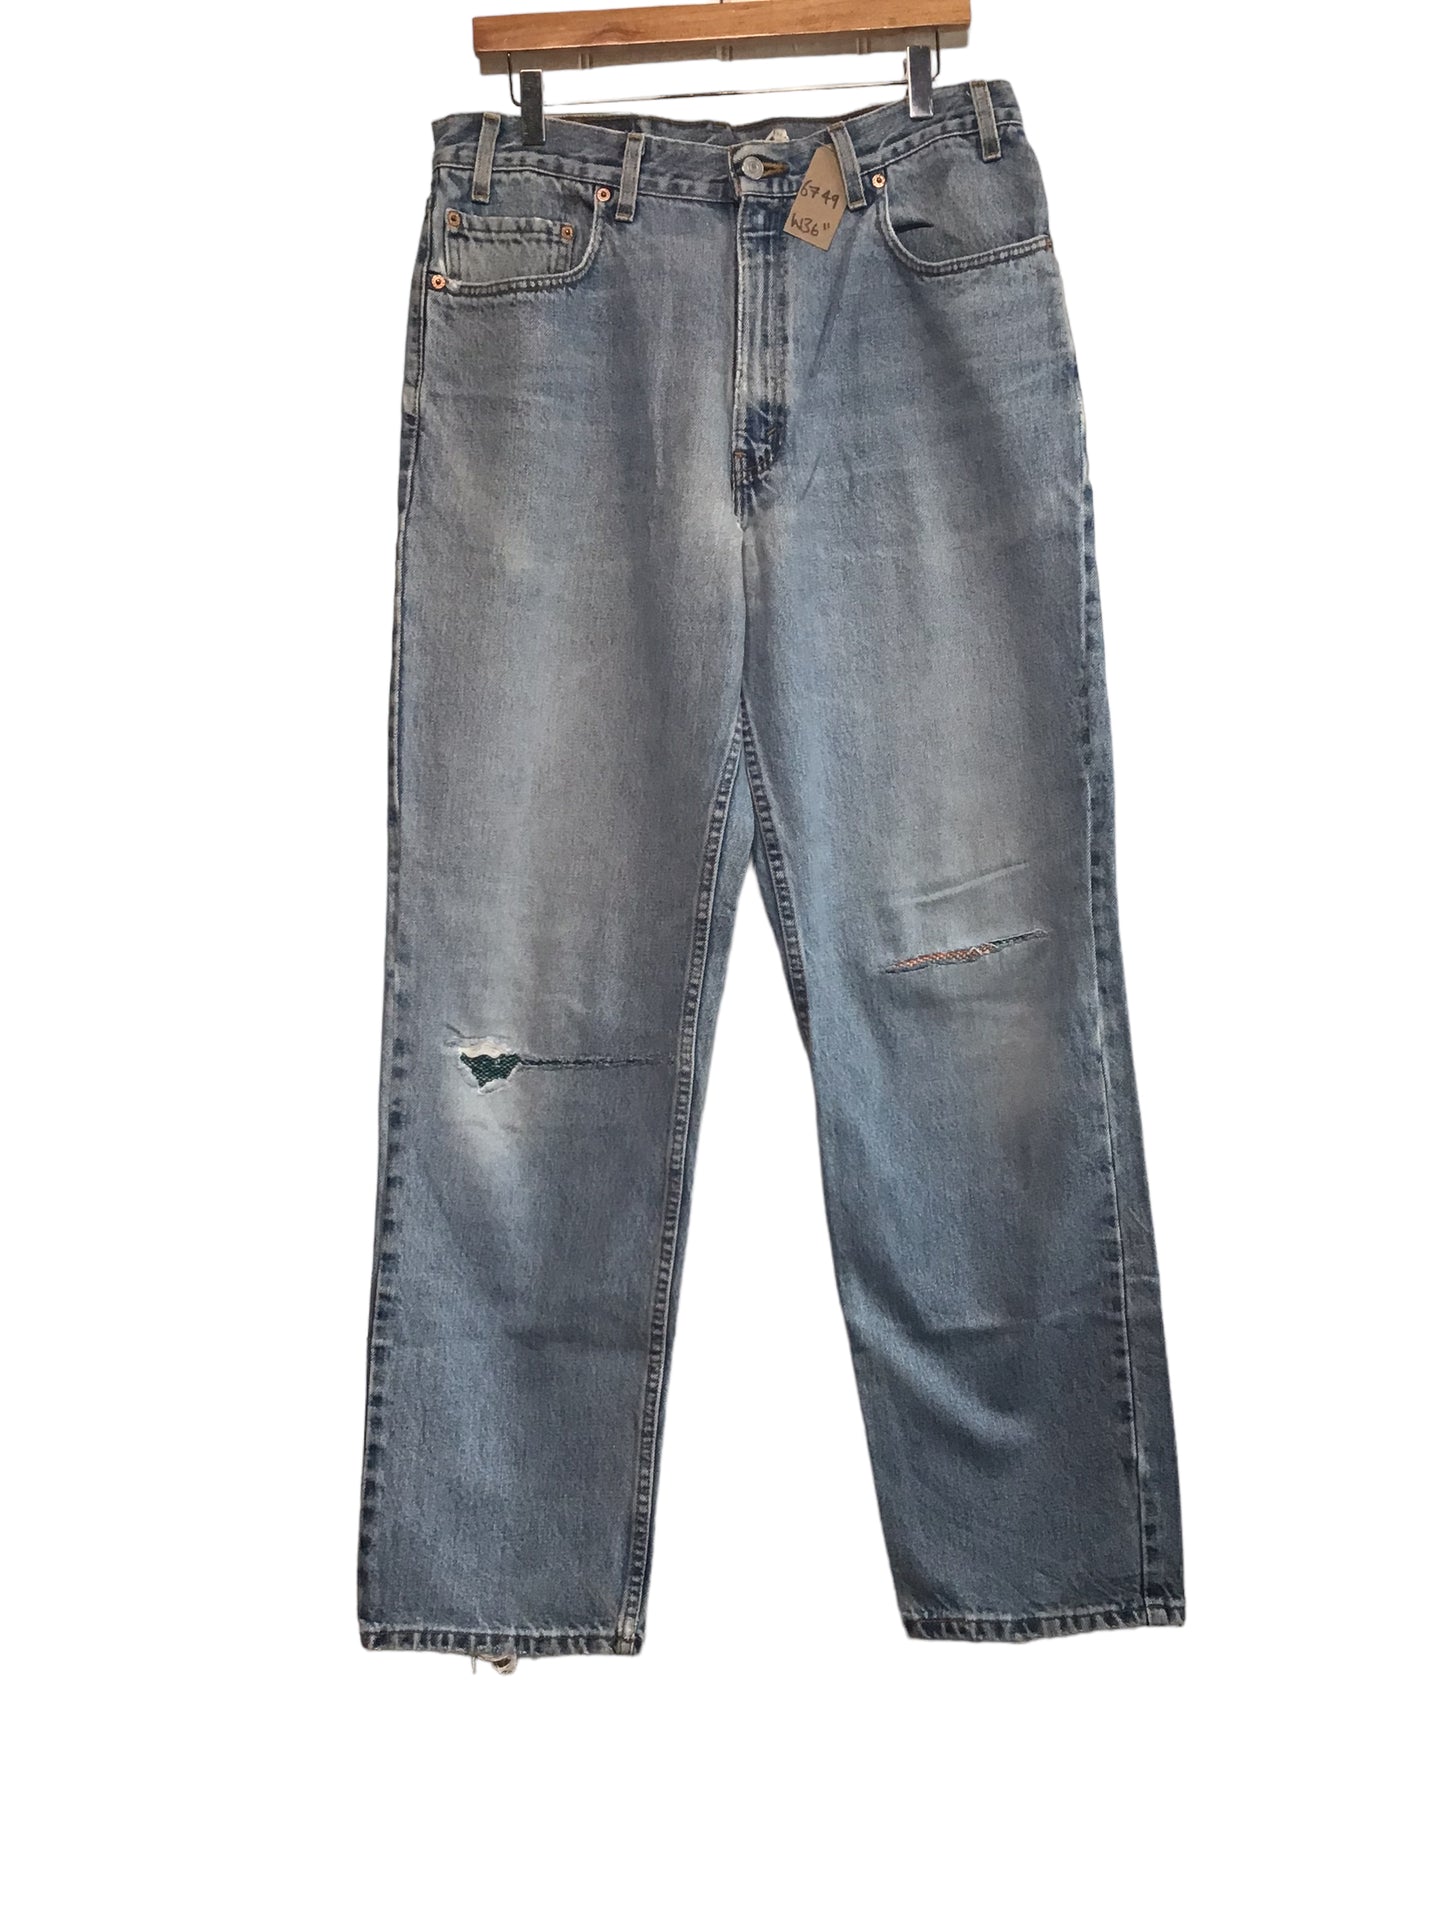 Levi 550 Jeans (36x32)